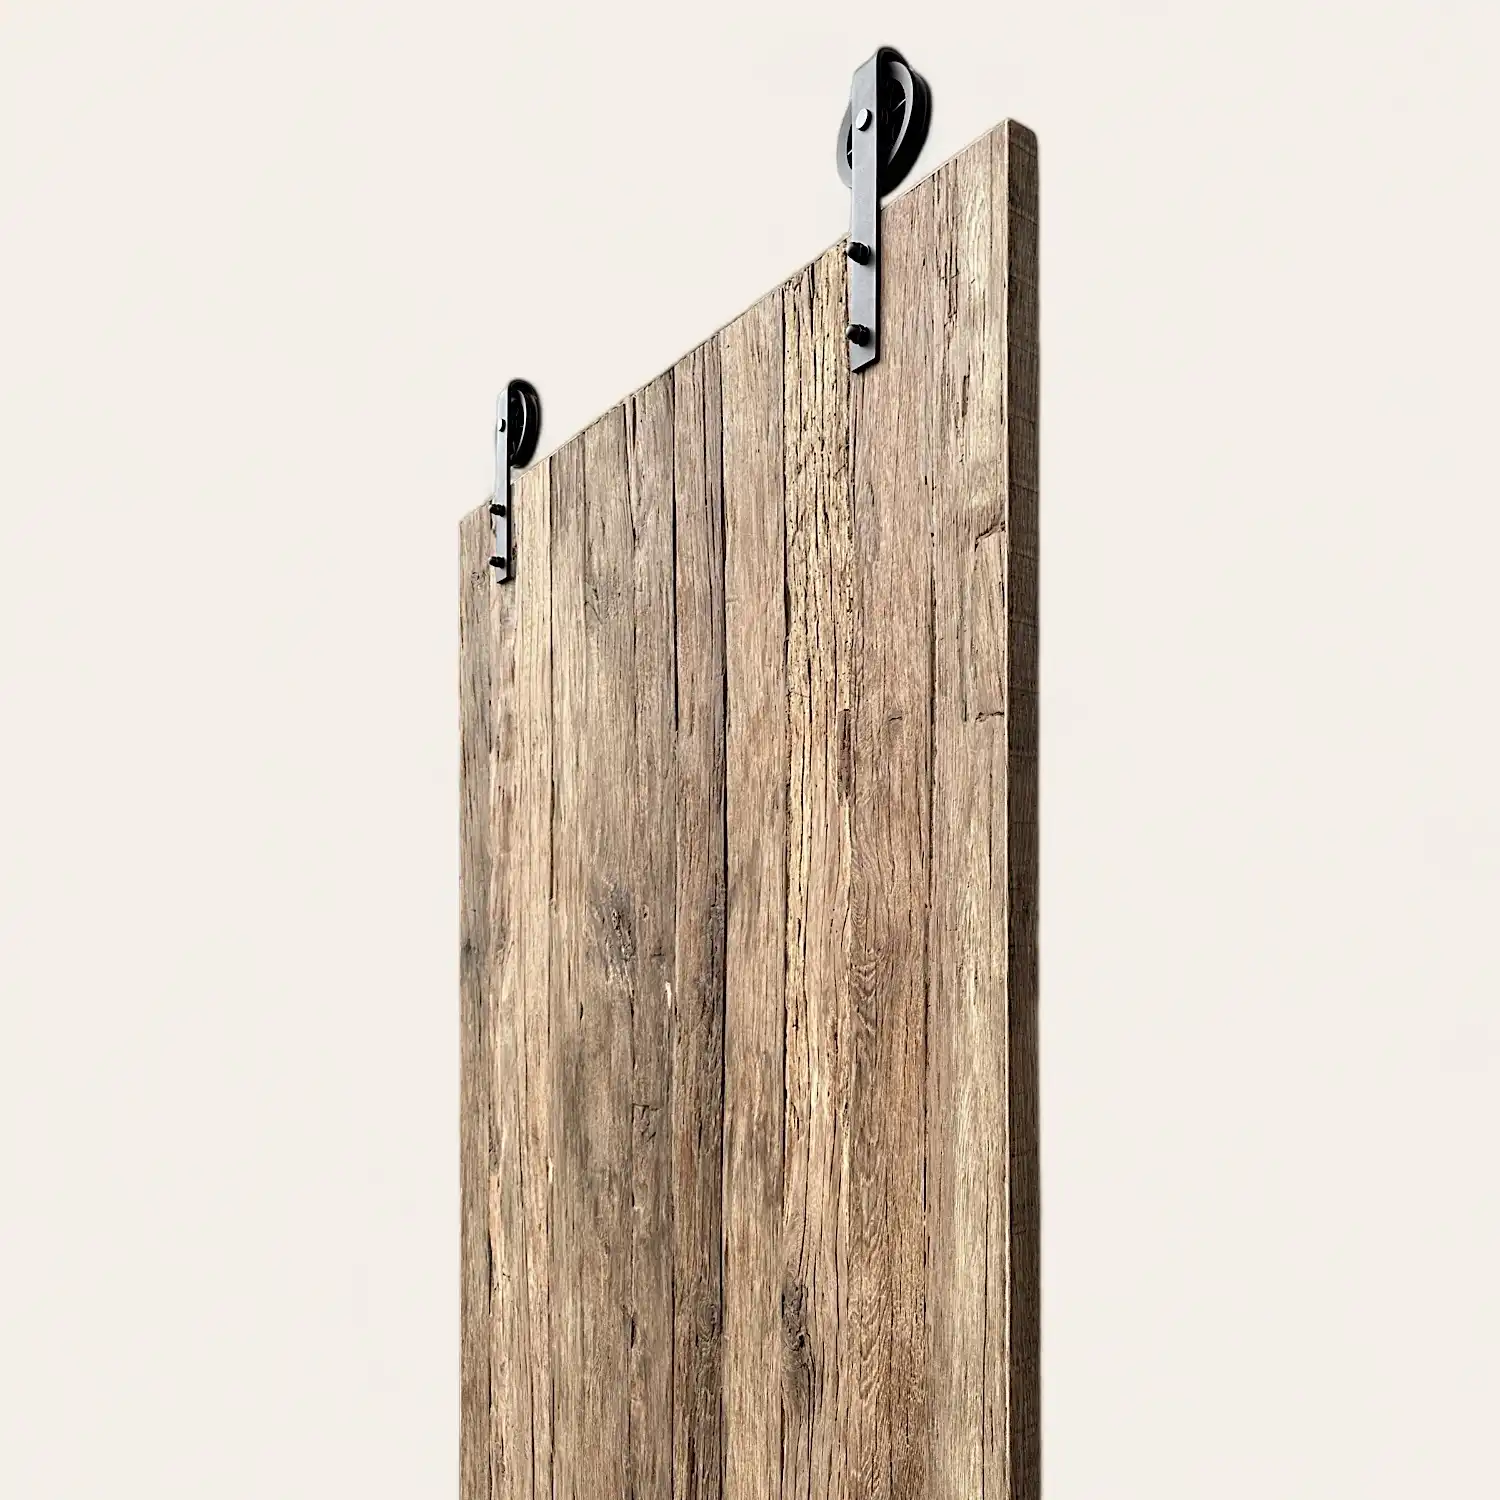  Planche en bois vieilli avec crochets métalliques montés sur un mur de couleur claire. 